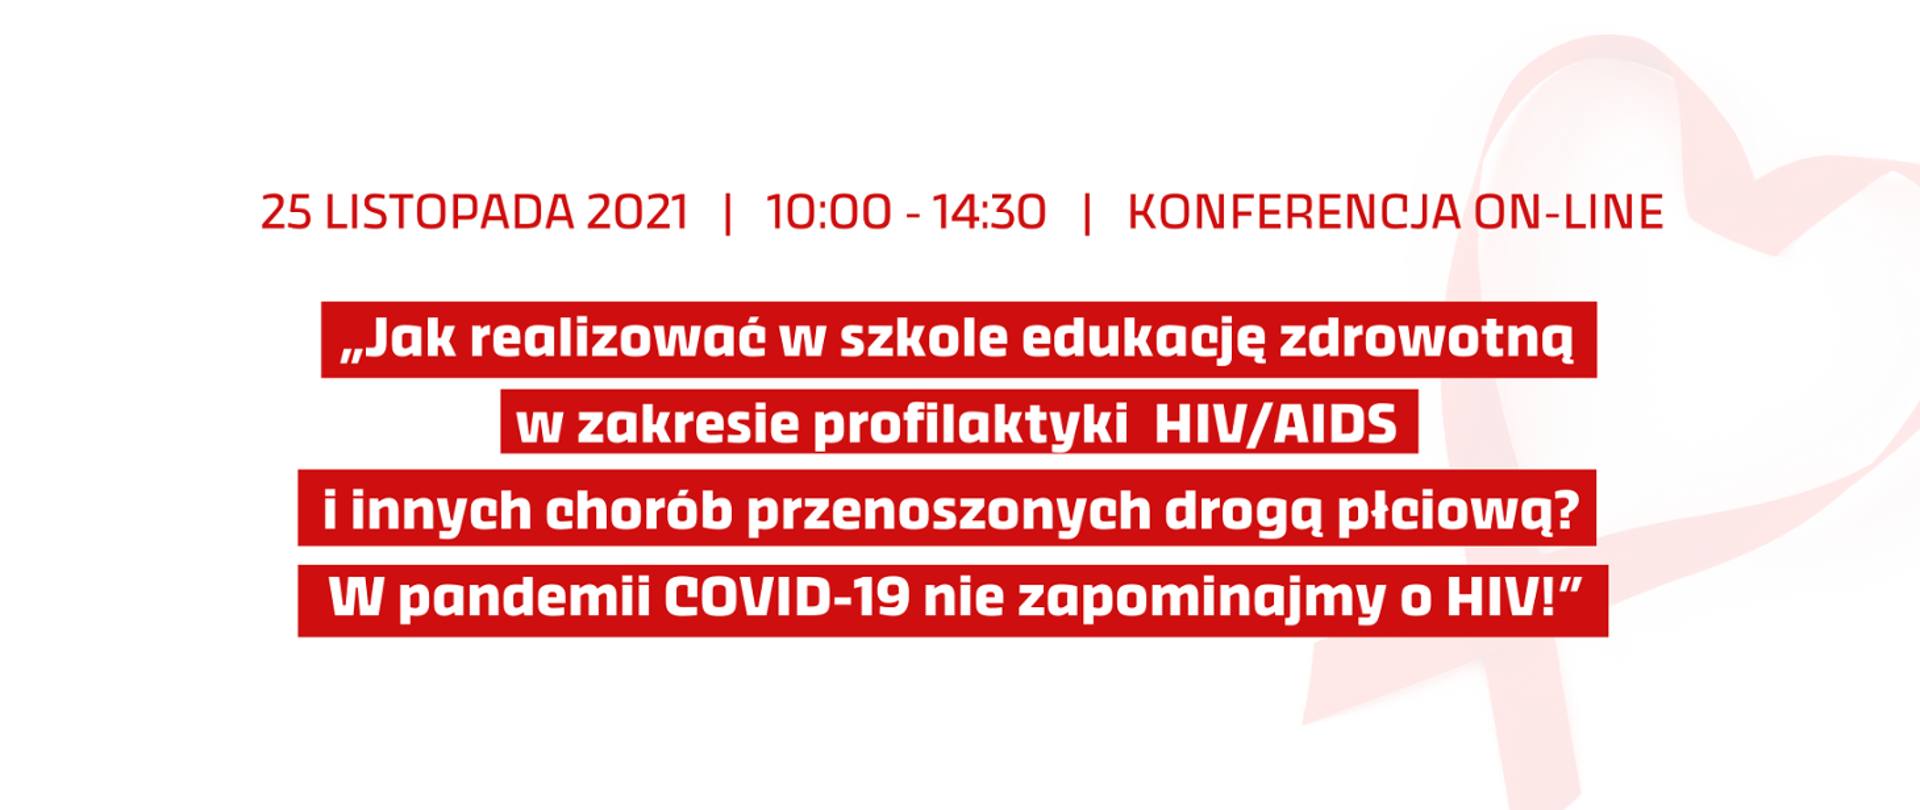 Białe tło z czerwonym napisem: 25 listopada 2021 konferencja on-line: "Jak realizować w szkole edukację zdrowotną w zakresie profilaktyki HIV/AIDS i innych chorób przenoszonych drogą płciową? W pandemii COVID-19 nie zapominajmy o HIV!"